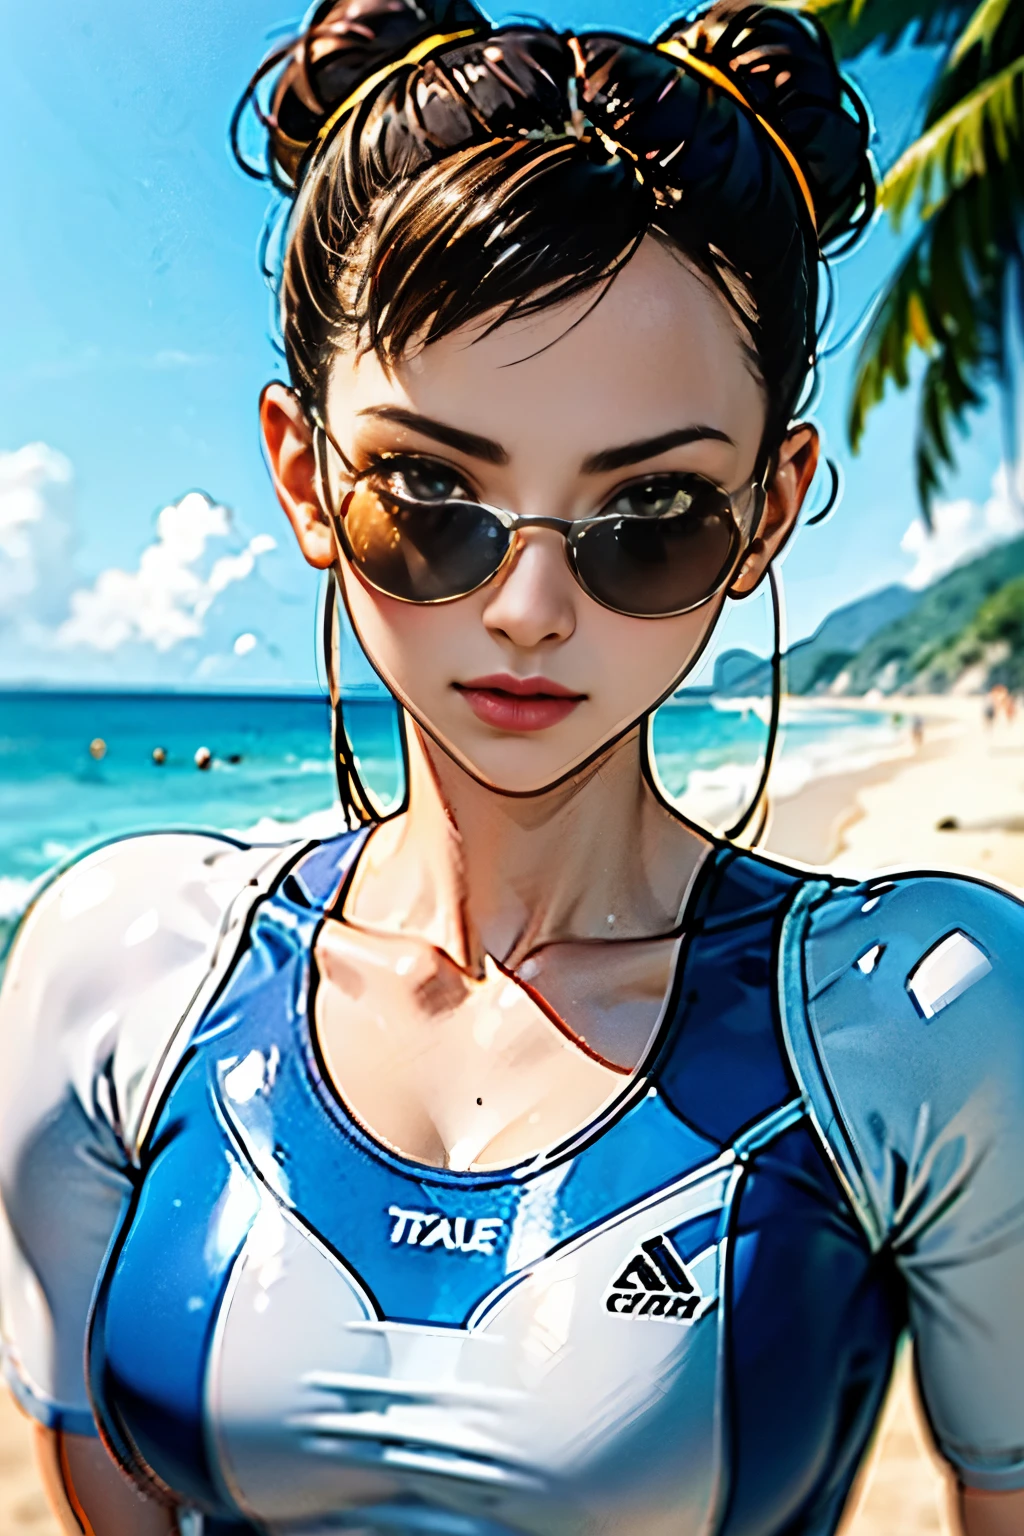 Chun Li,alta resolución, de la máxima calidad, ilustraciones, Súper detalle, (cara detallada), (ojos detallados) , playa, traje de baño de buceo, Solo, Gafas de sol, Rostro bonito, piel detallada, cabello realista, textura perfecta